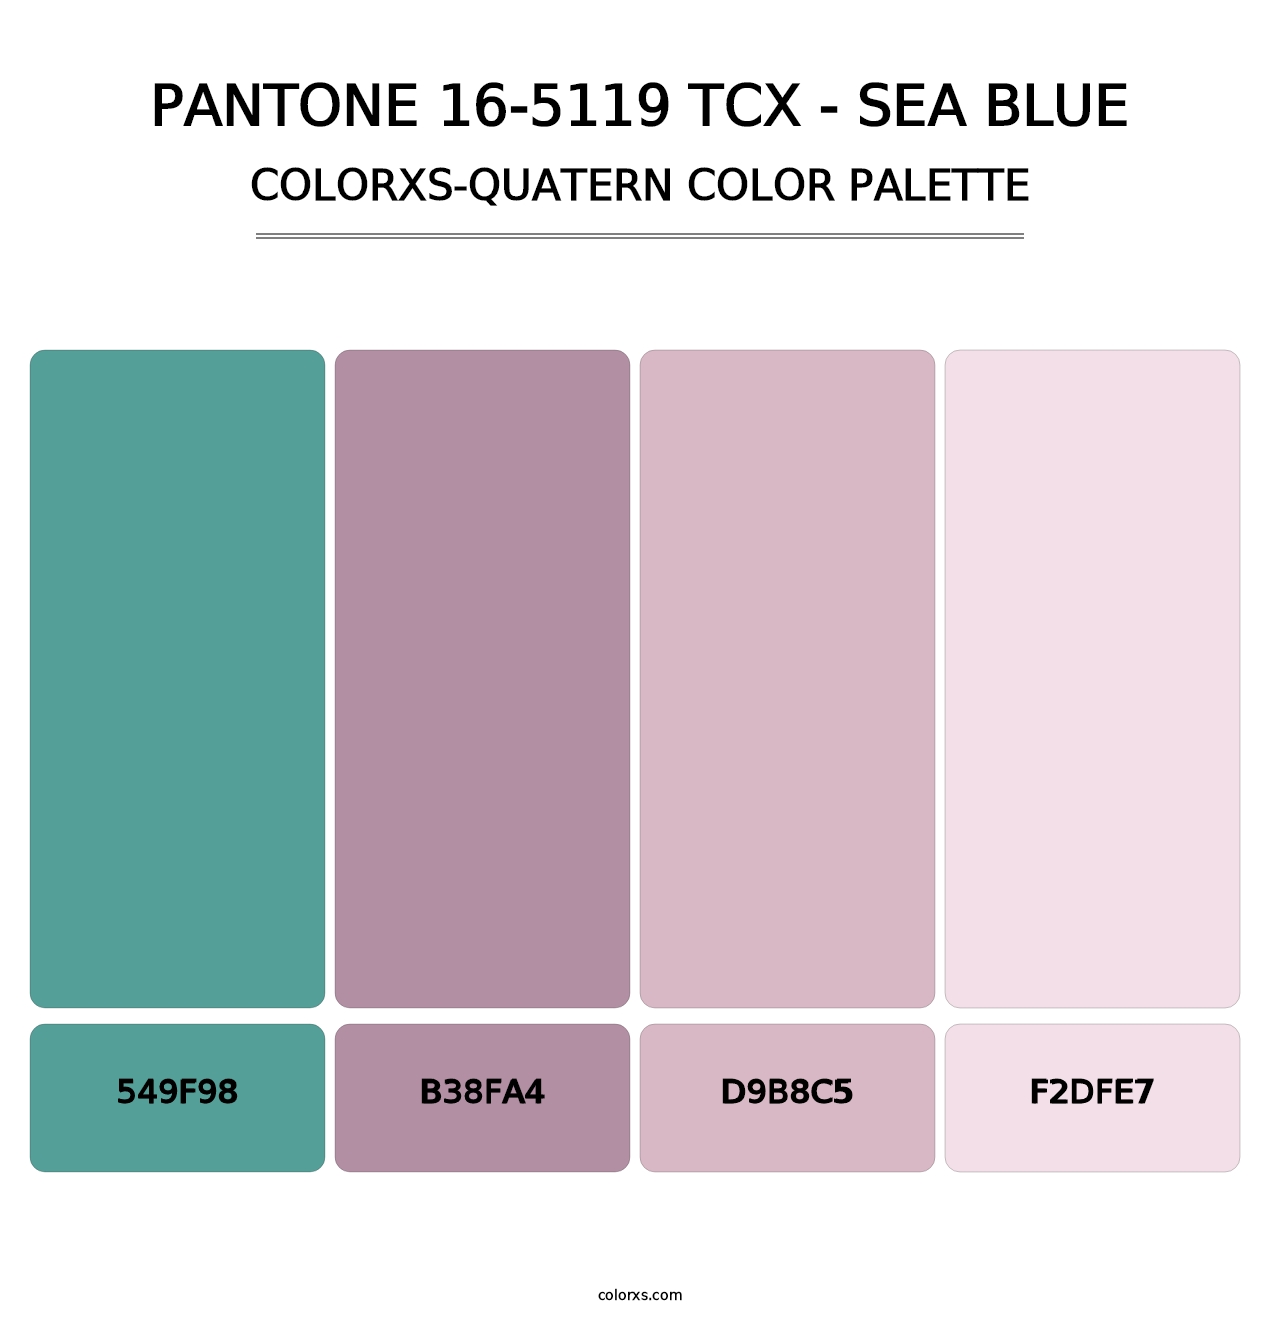 PANTONE 16-5119 TCX - Sea Blue - Colorxs Quatern Palette